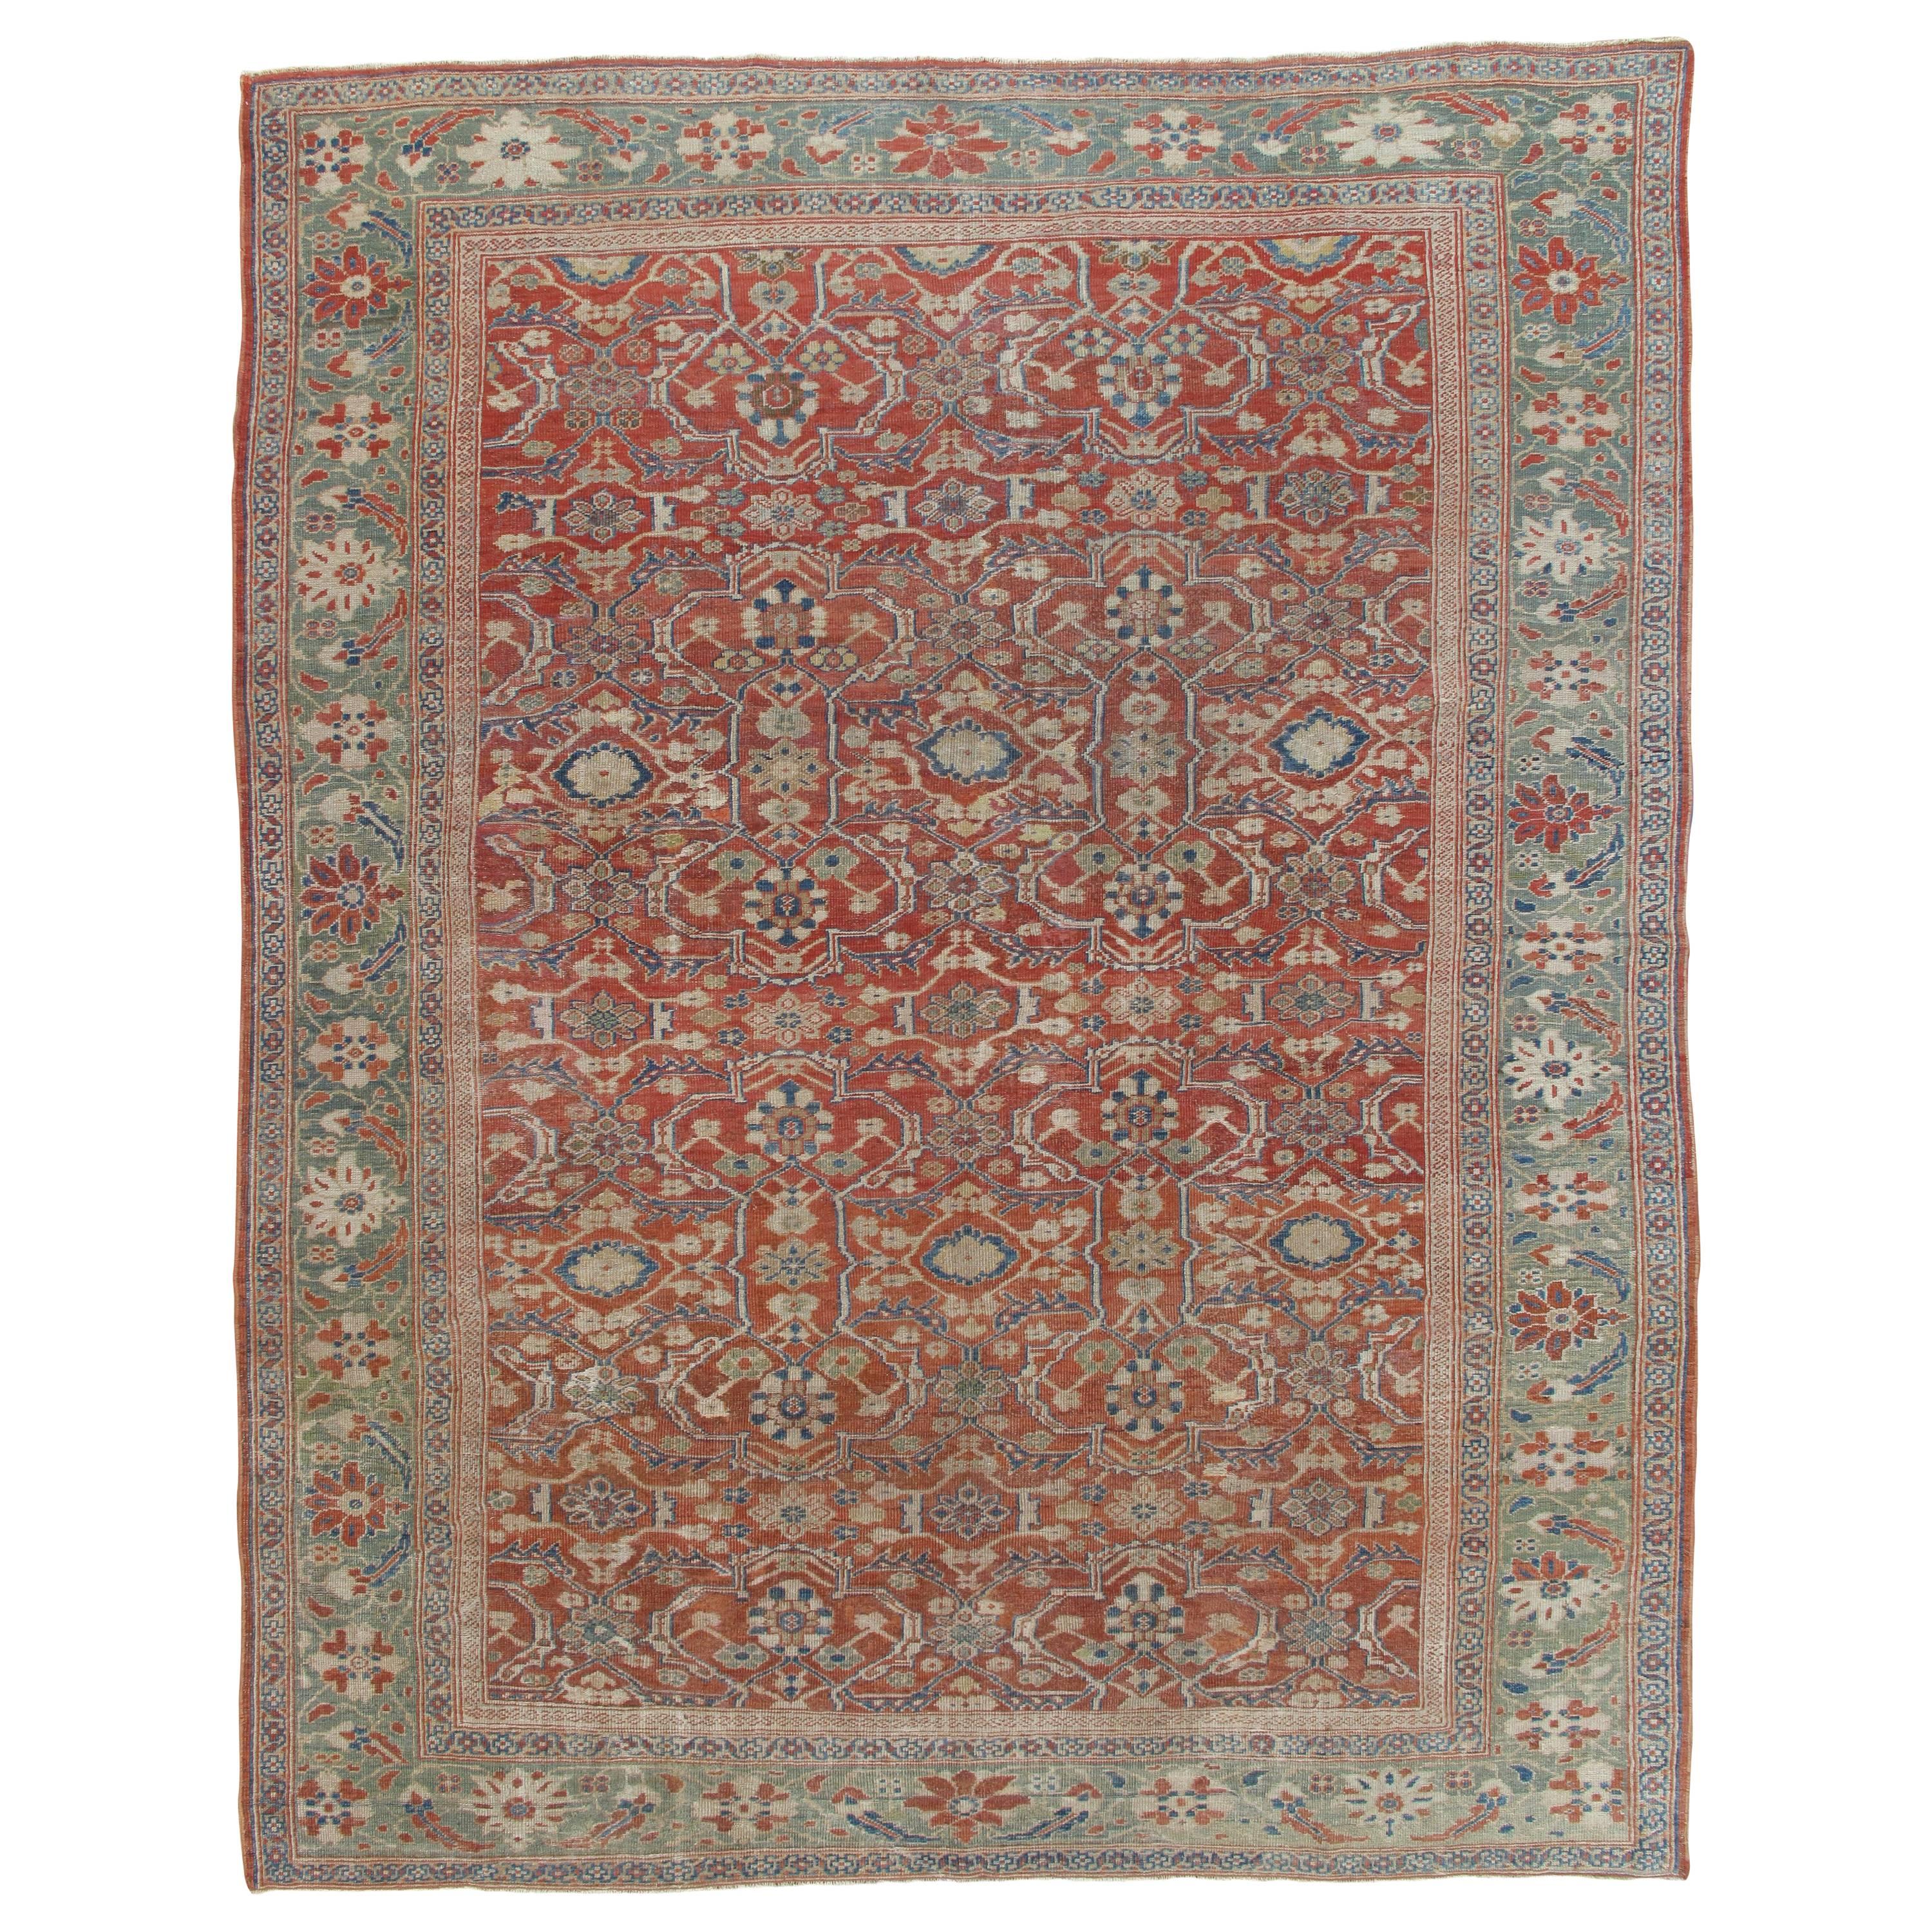 Tapis persan ancien Sultanabad, tapis oriental fait à la main, bleu clair, rouge, vert